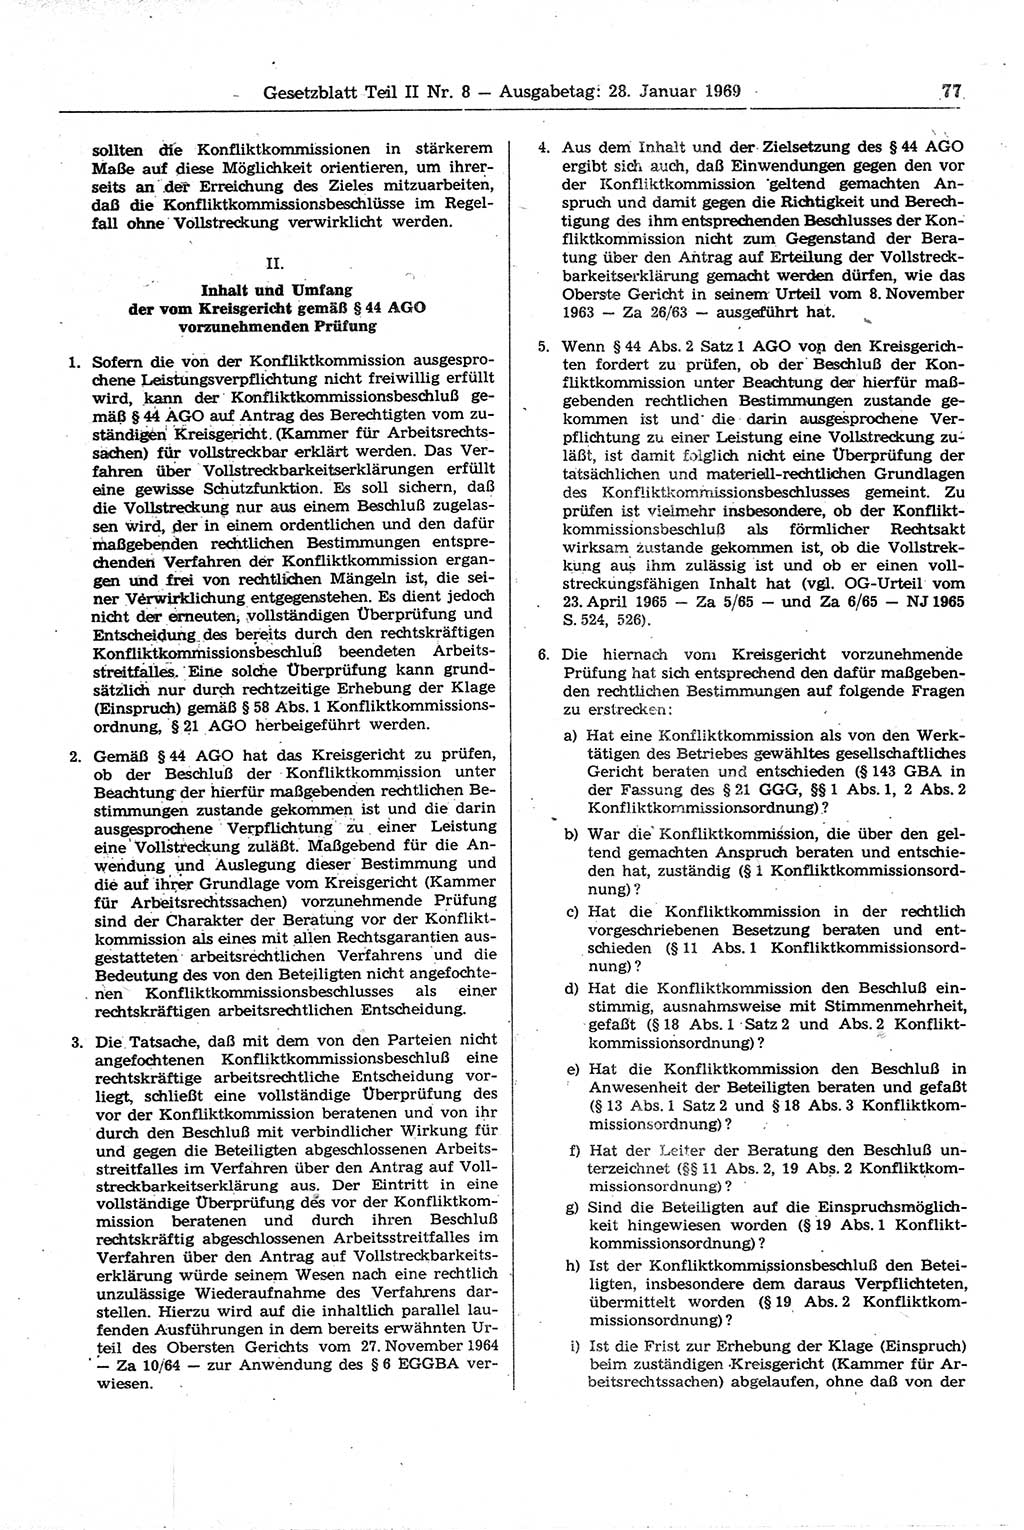 Gesetzblatt (GBl.) der Deutschen Demokratischen Republik (DDR) Teil ⅠⅠ 1969, Seite 77 (GBl. DDR ⅠⅠ 1969, S. 77)